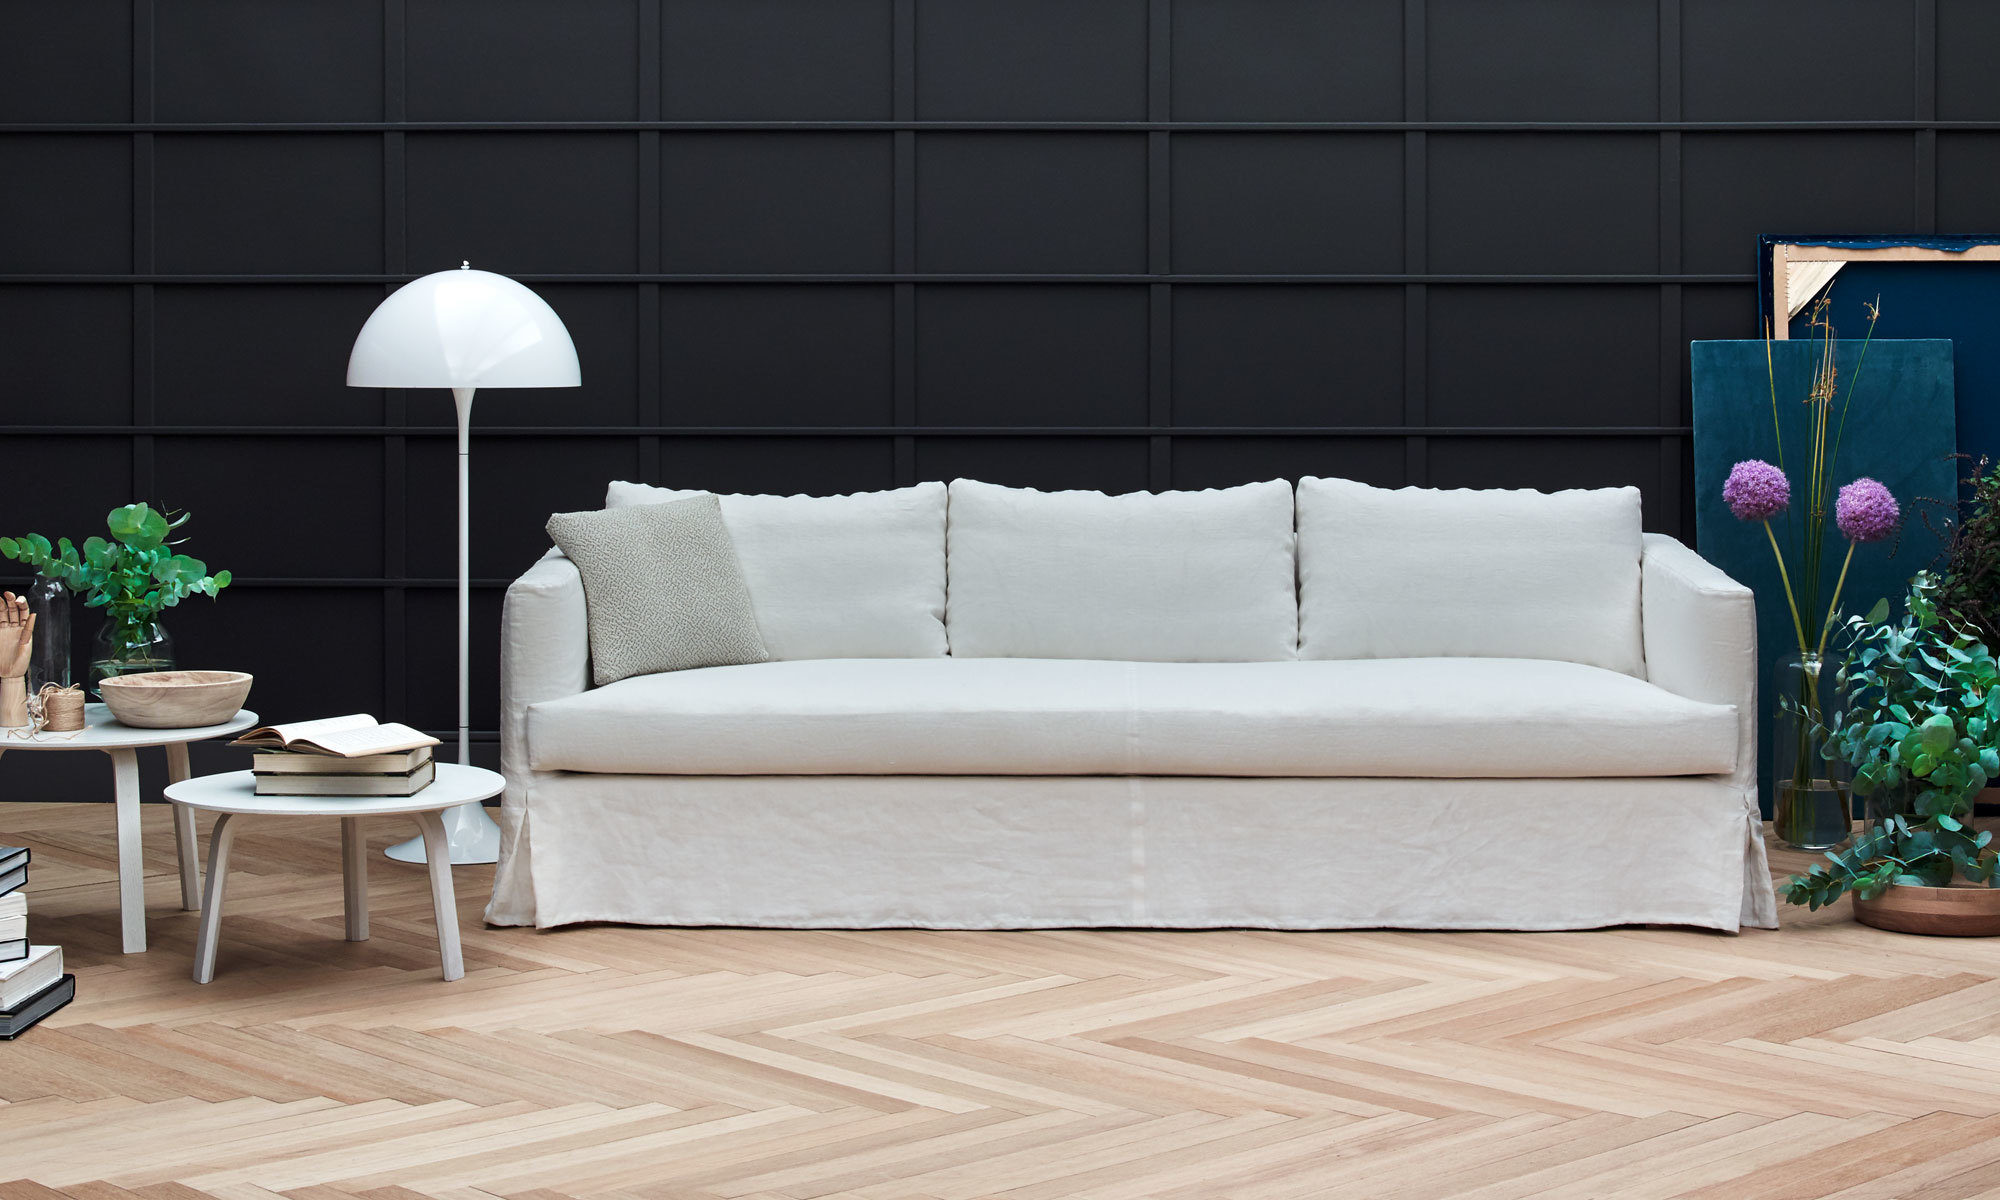 Venice Sofa by Mario Ruiz for Joquer / Residential / Mobilia